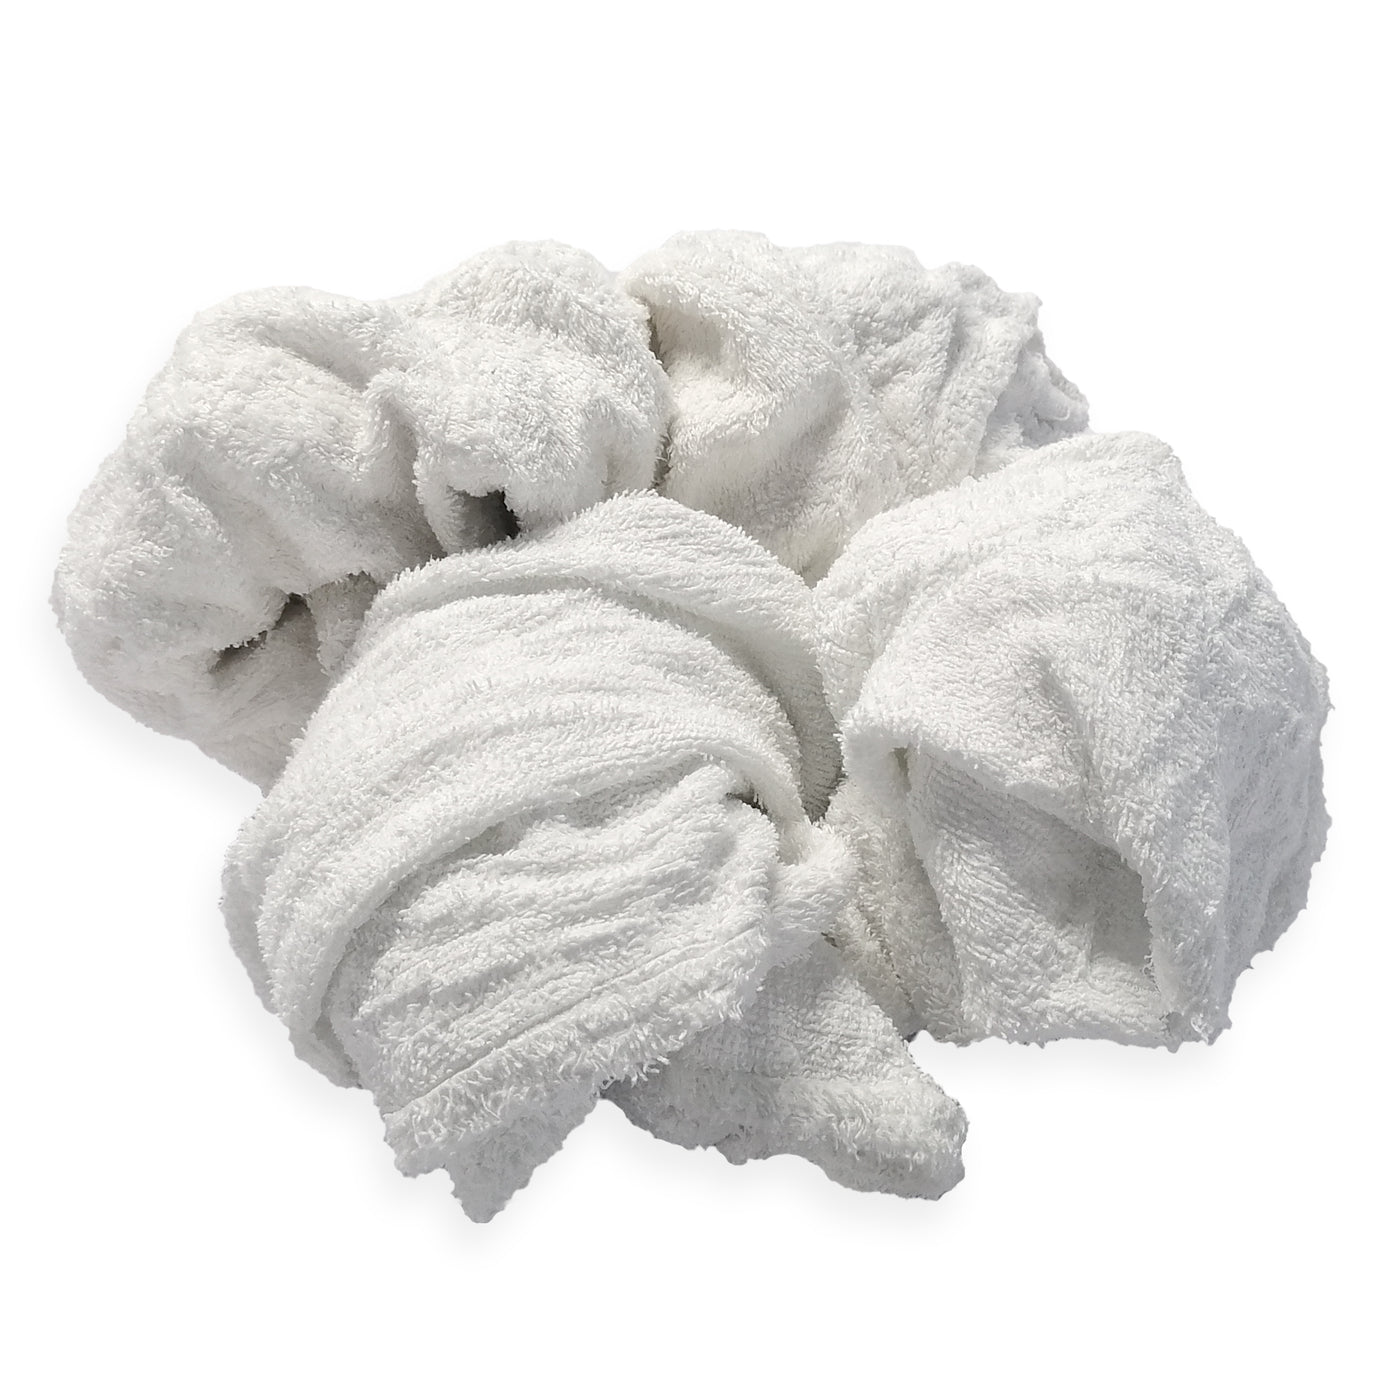 White Cotton Lint Free Rags, 25lb/Case